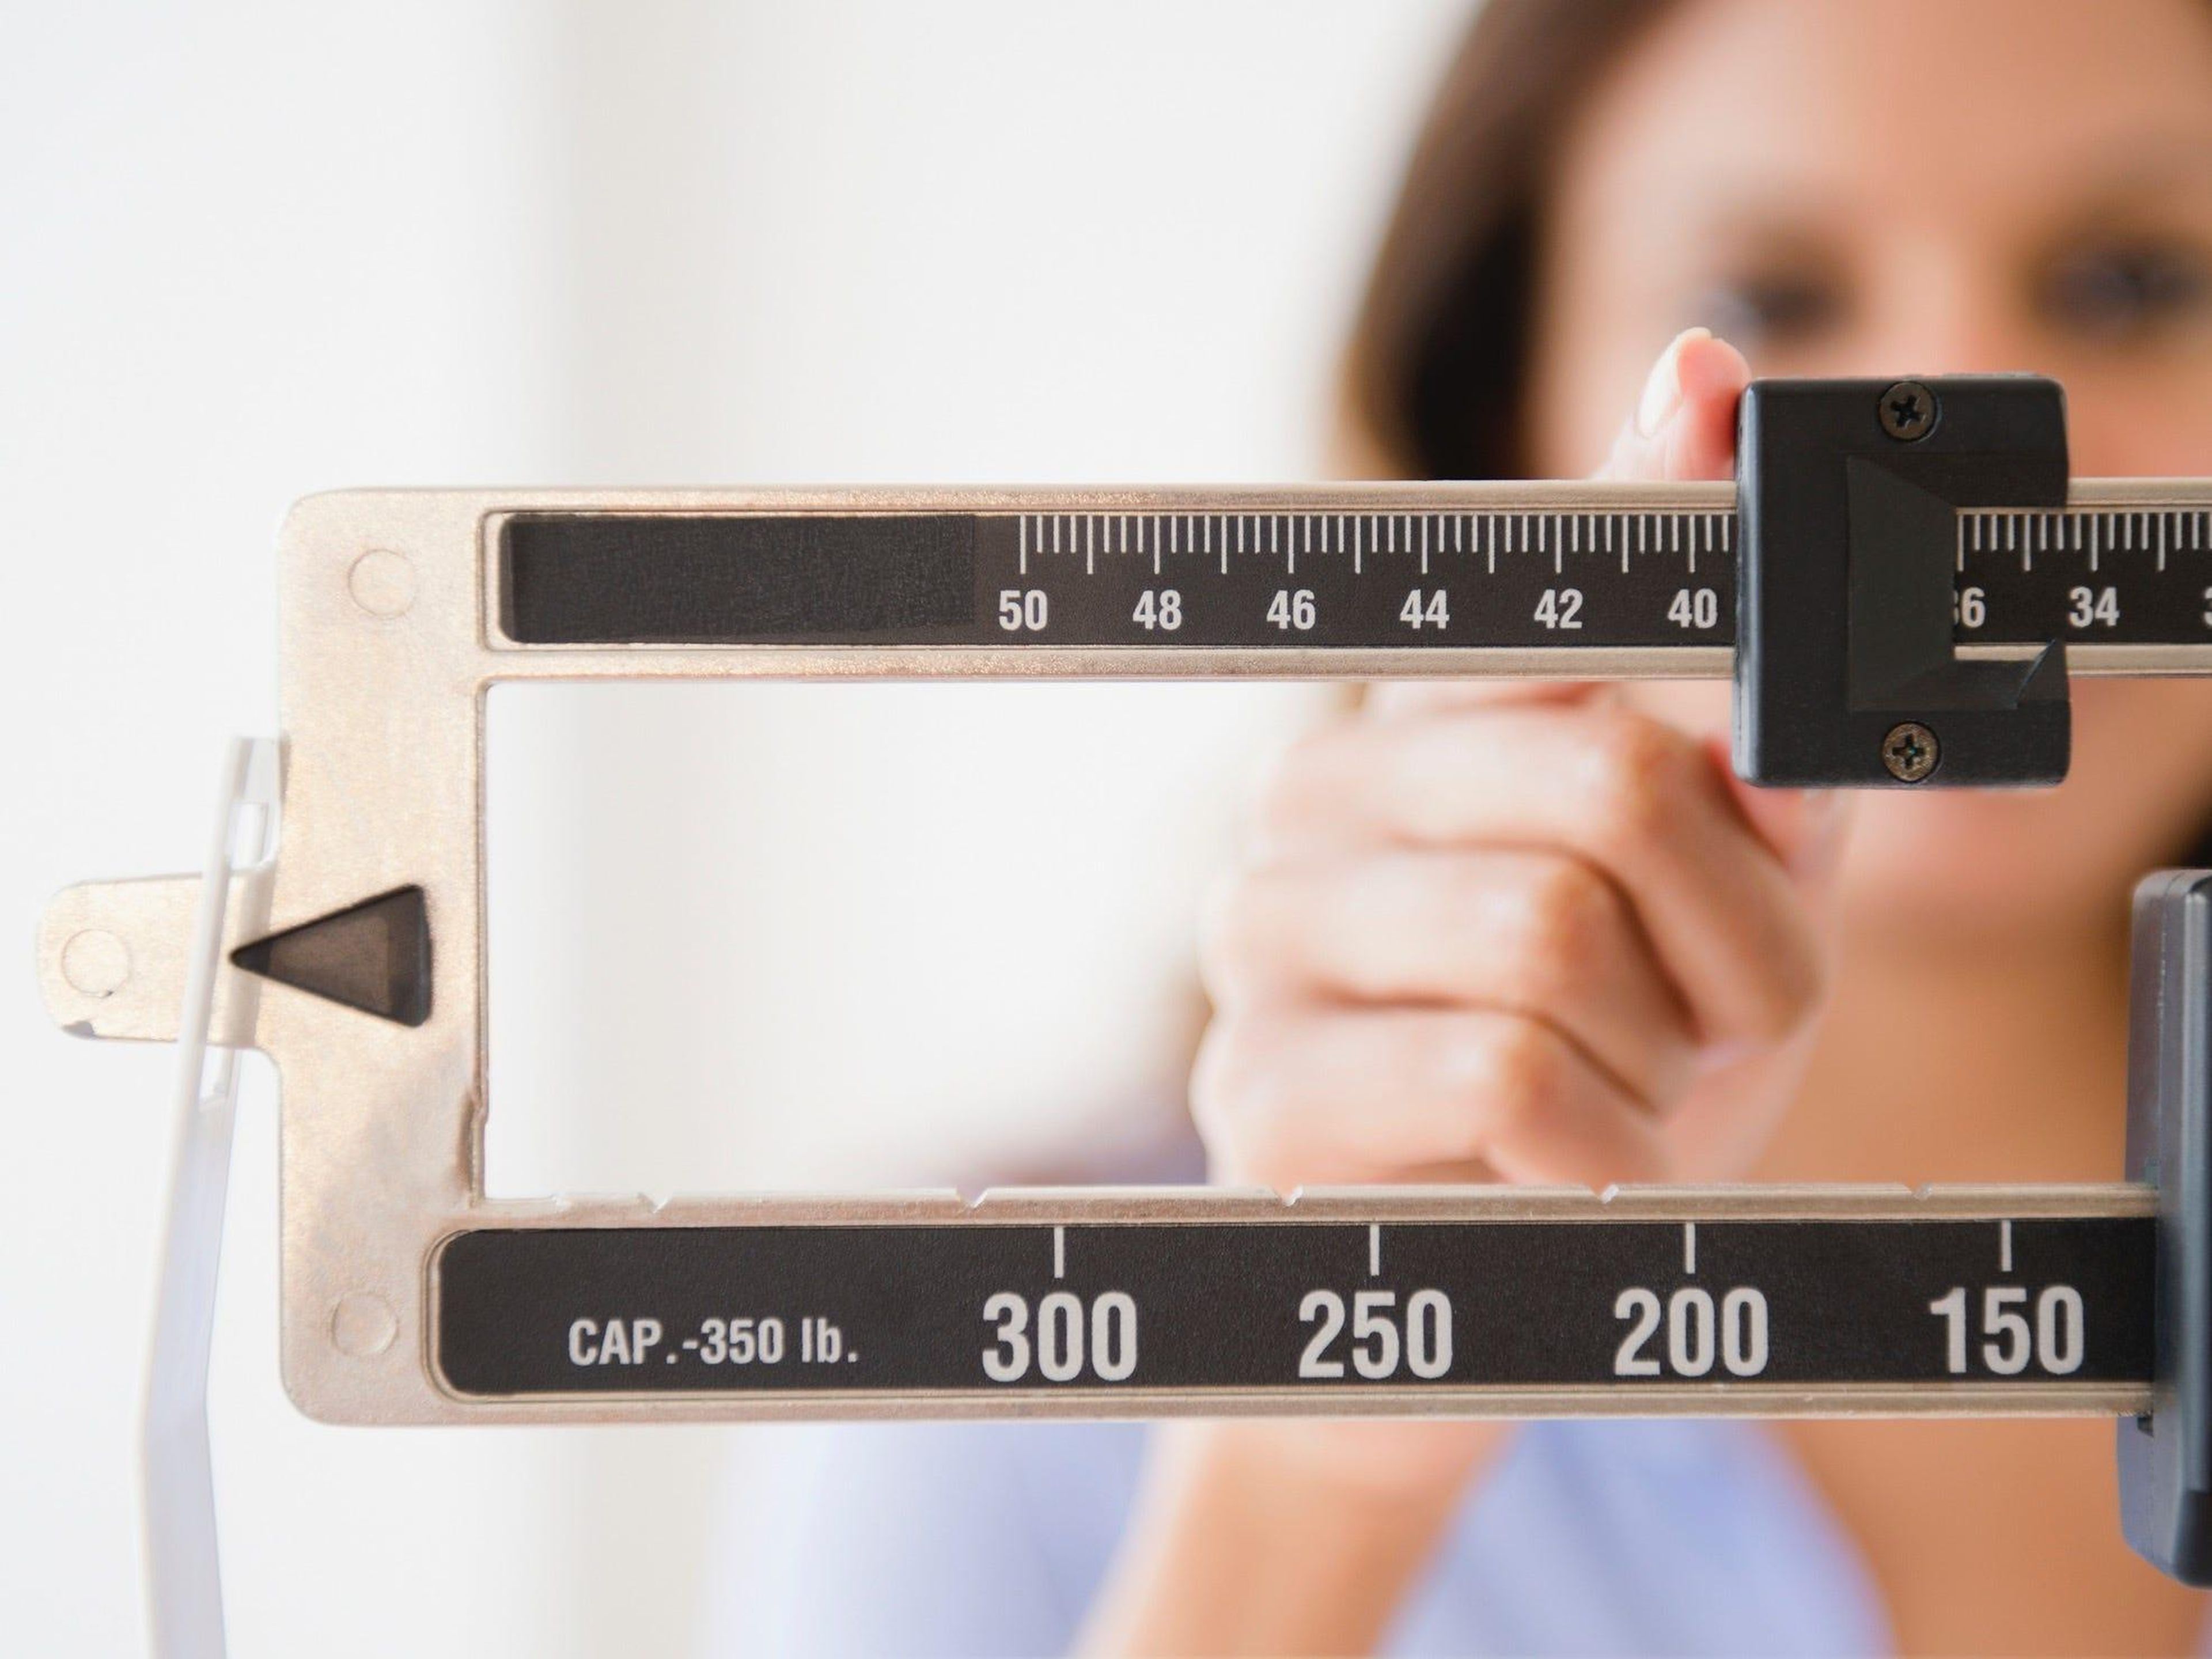 Un nuevo programa de pérdida de peso sin intervención ayudó a la gente a perder más kilos que en los cursos intensivos, según un estudio.